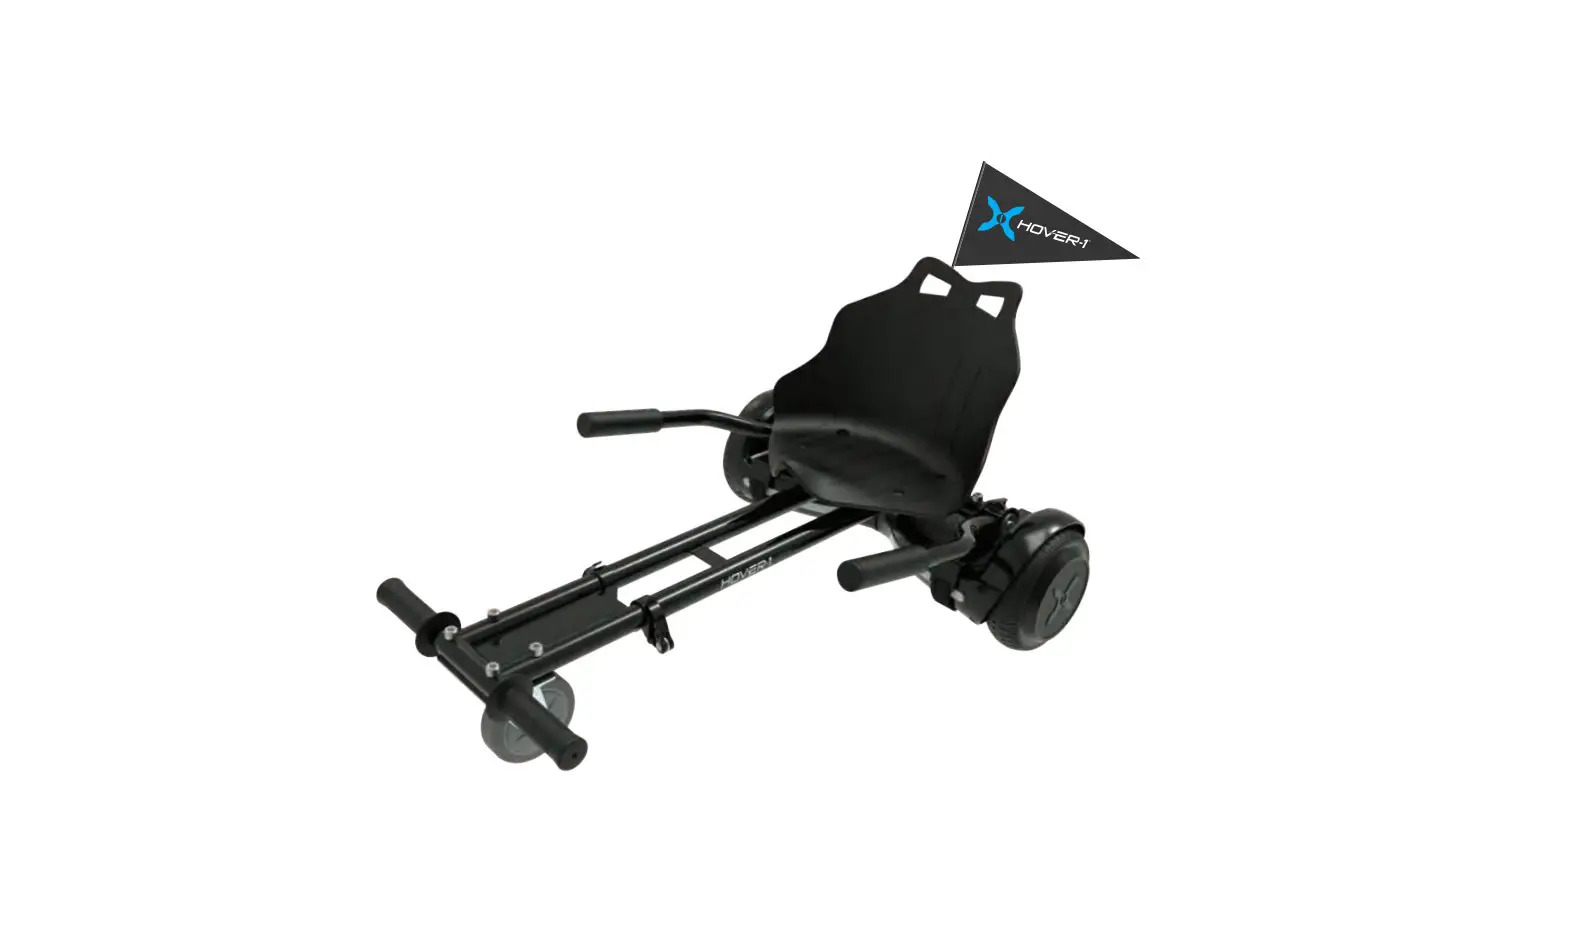 H1-MFH-CMB-KART Hoverboard Kart Combo for Kids